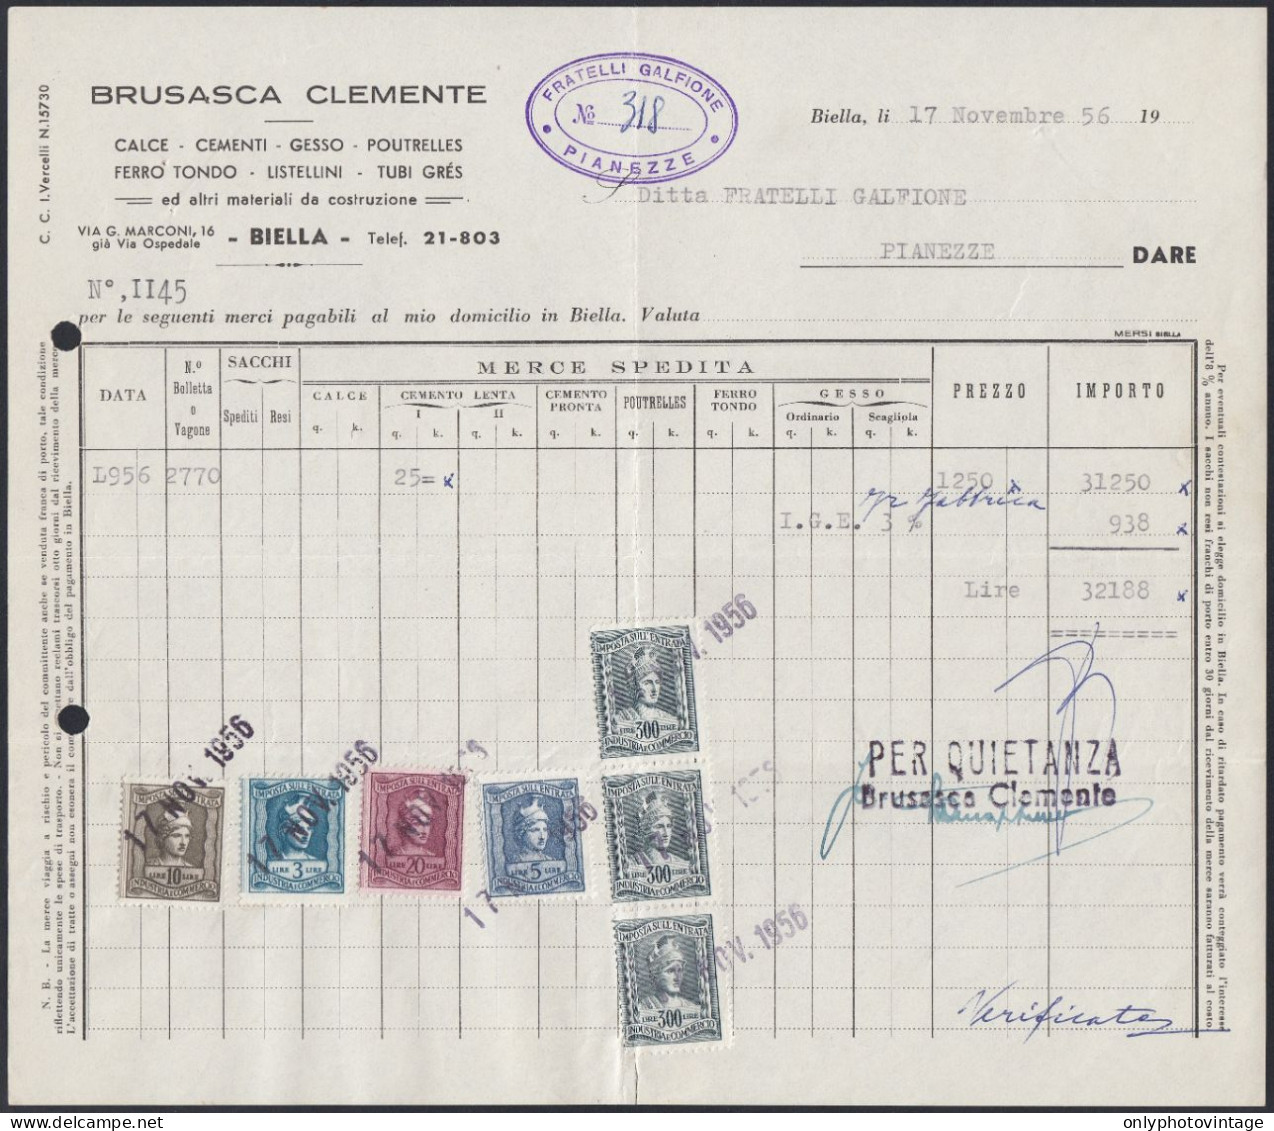 Biella 1956 - Brusasca Clemente - Materiale Da Costruzione - Fattura - Italien